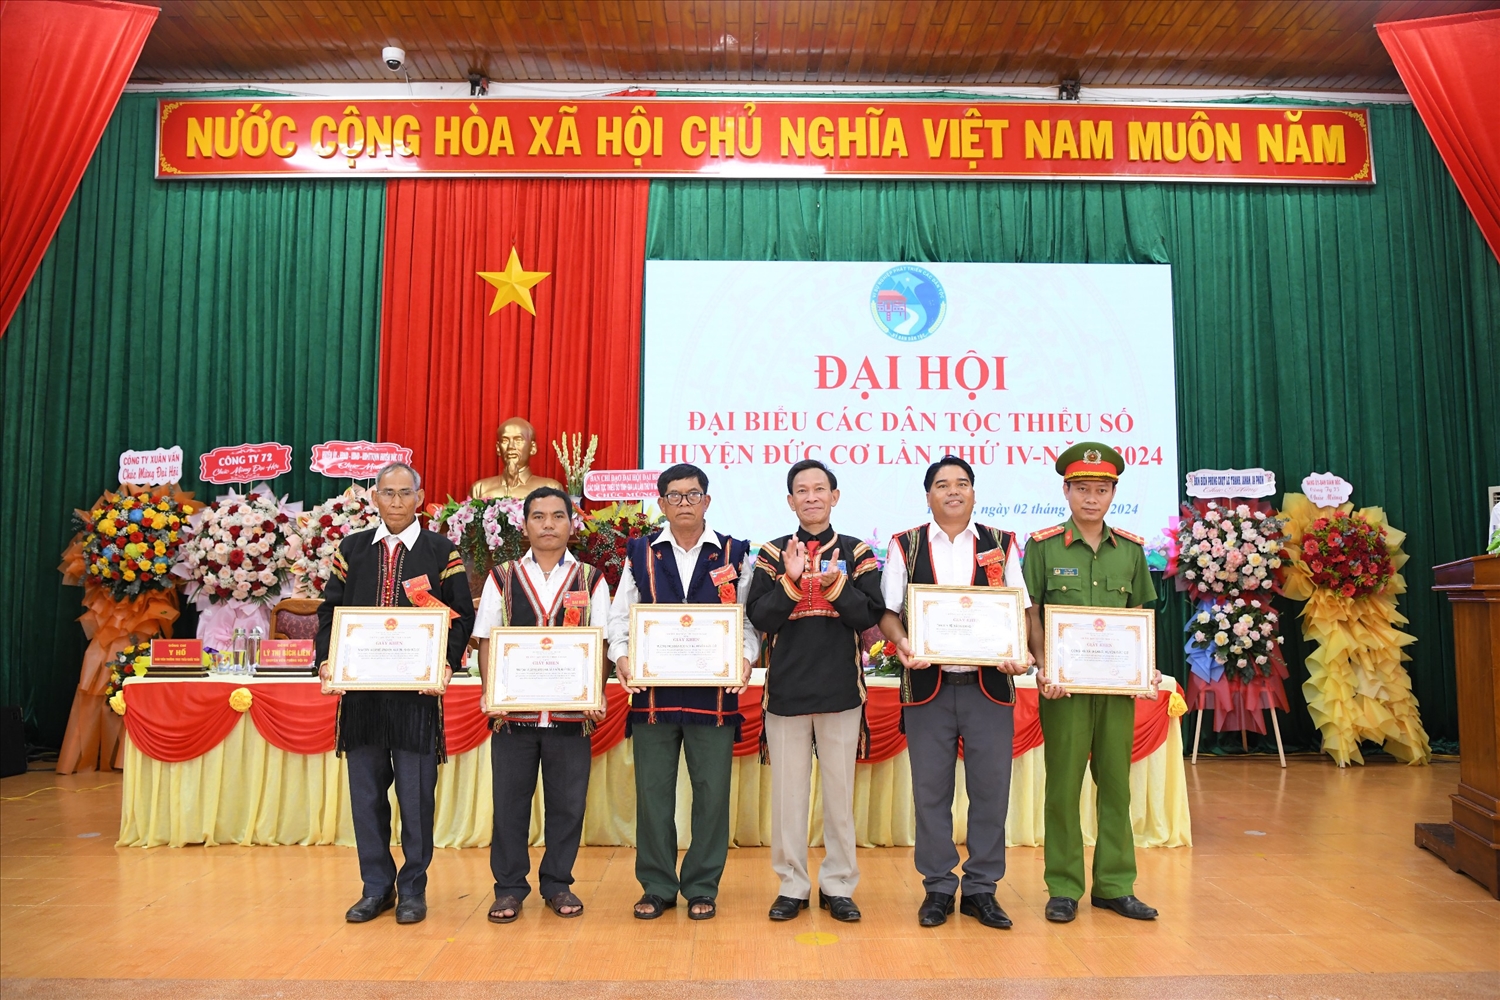 Trưởng Ban Dân tộc tỉnh Gia Lai đã tặng Giấy khen cho các tập thể có nhiều thành tích xuất sắc trong các phong trào thi đua yêu nước, giữ gìn bản sắc văn hóa và đoàn kết các dân tộc